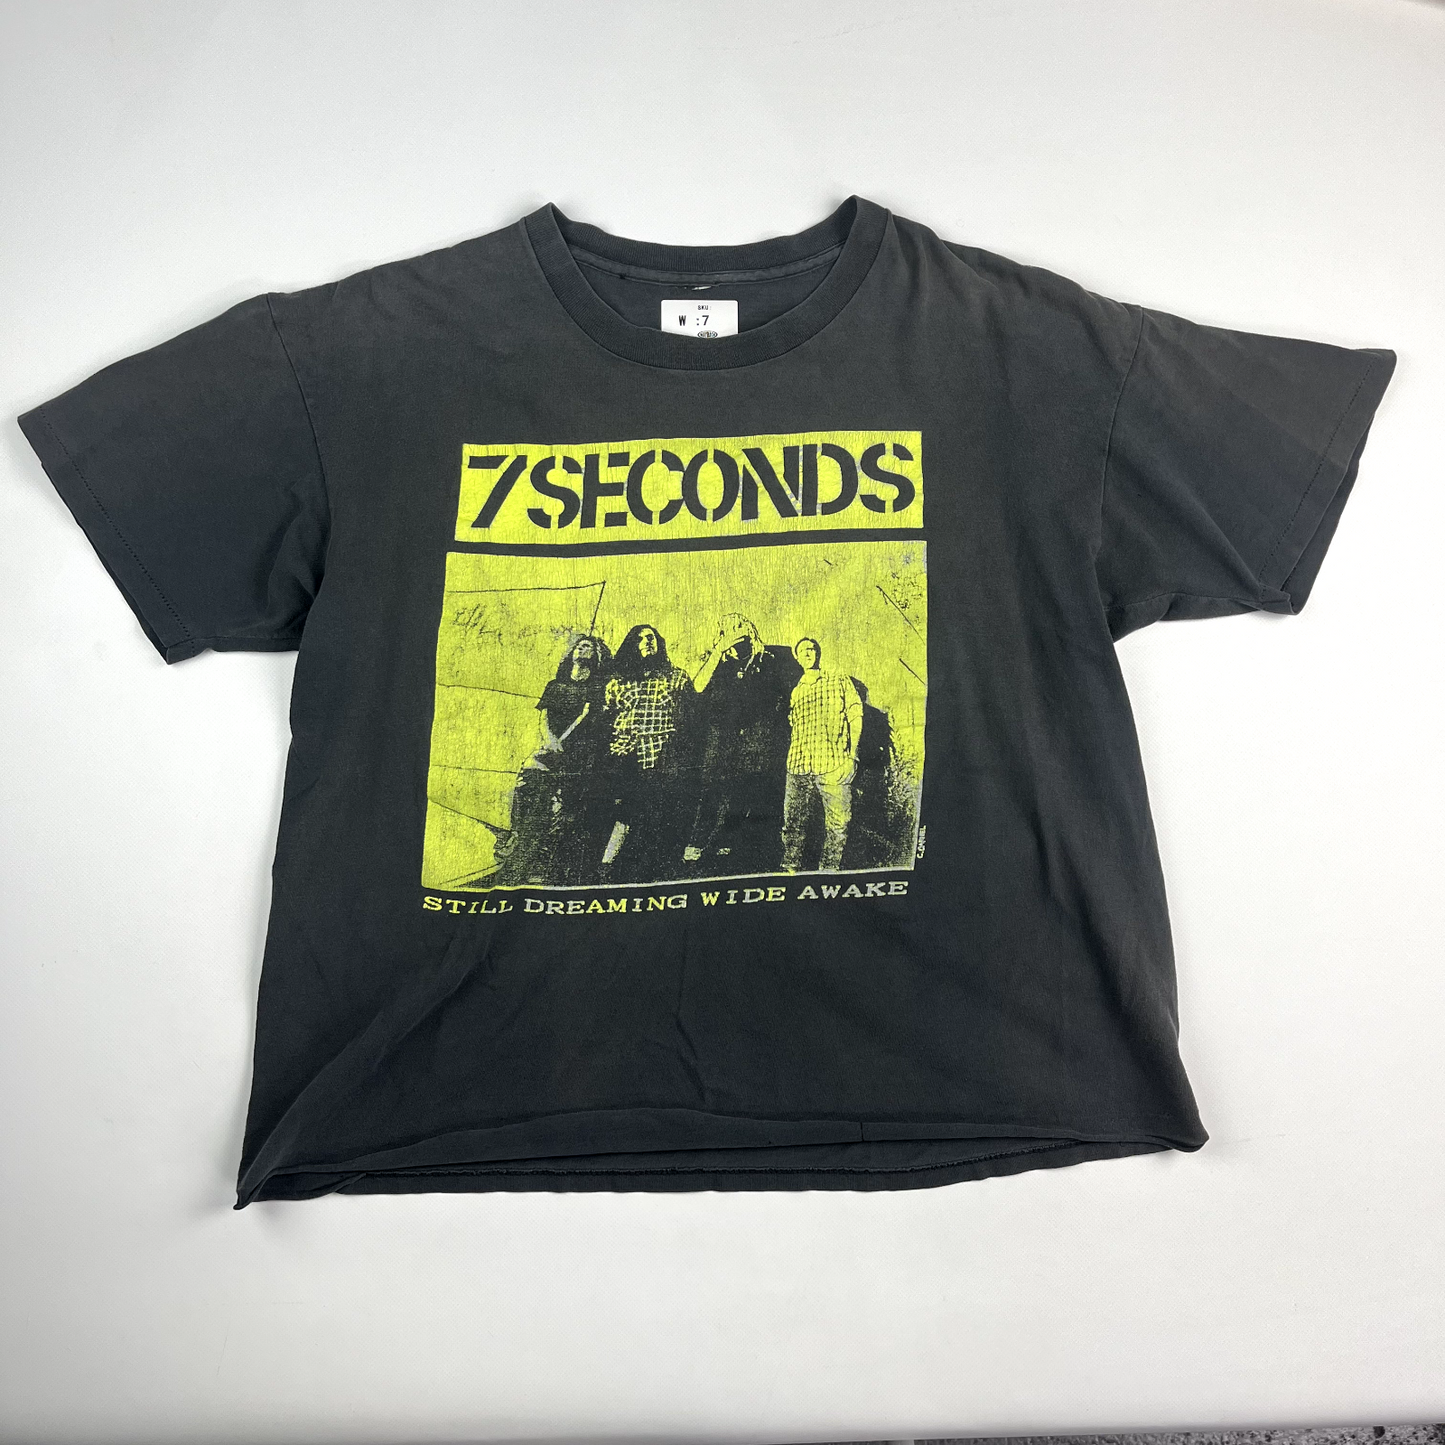 VINTAGE 7 Seconds Band Shirt Soulforce Revolution Tour sz Large Men 90s